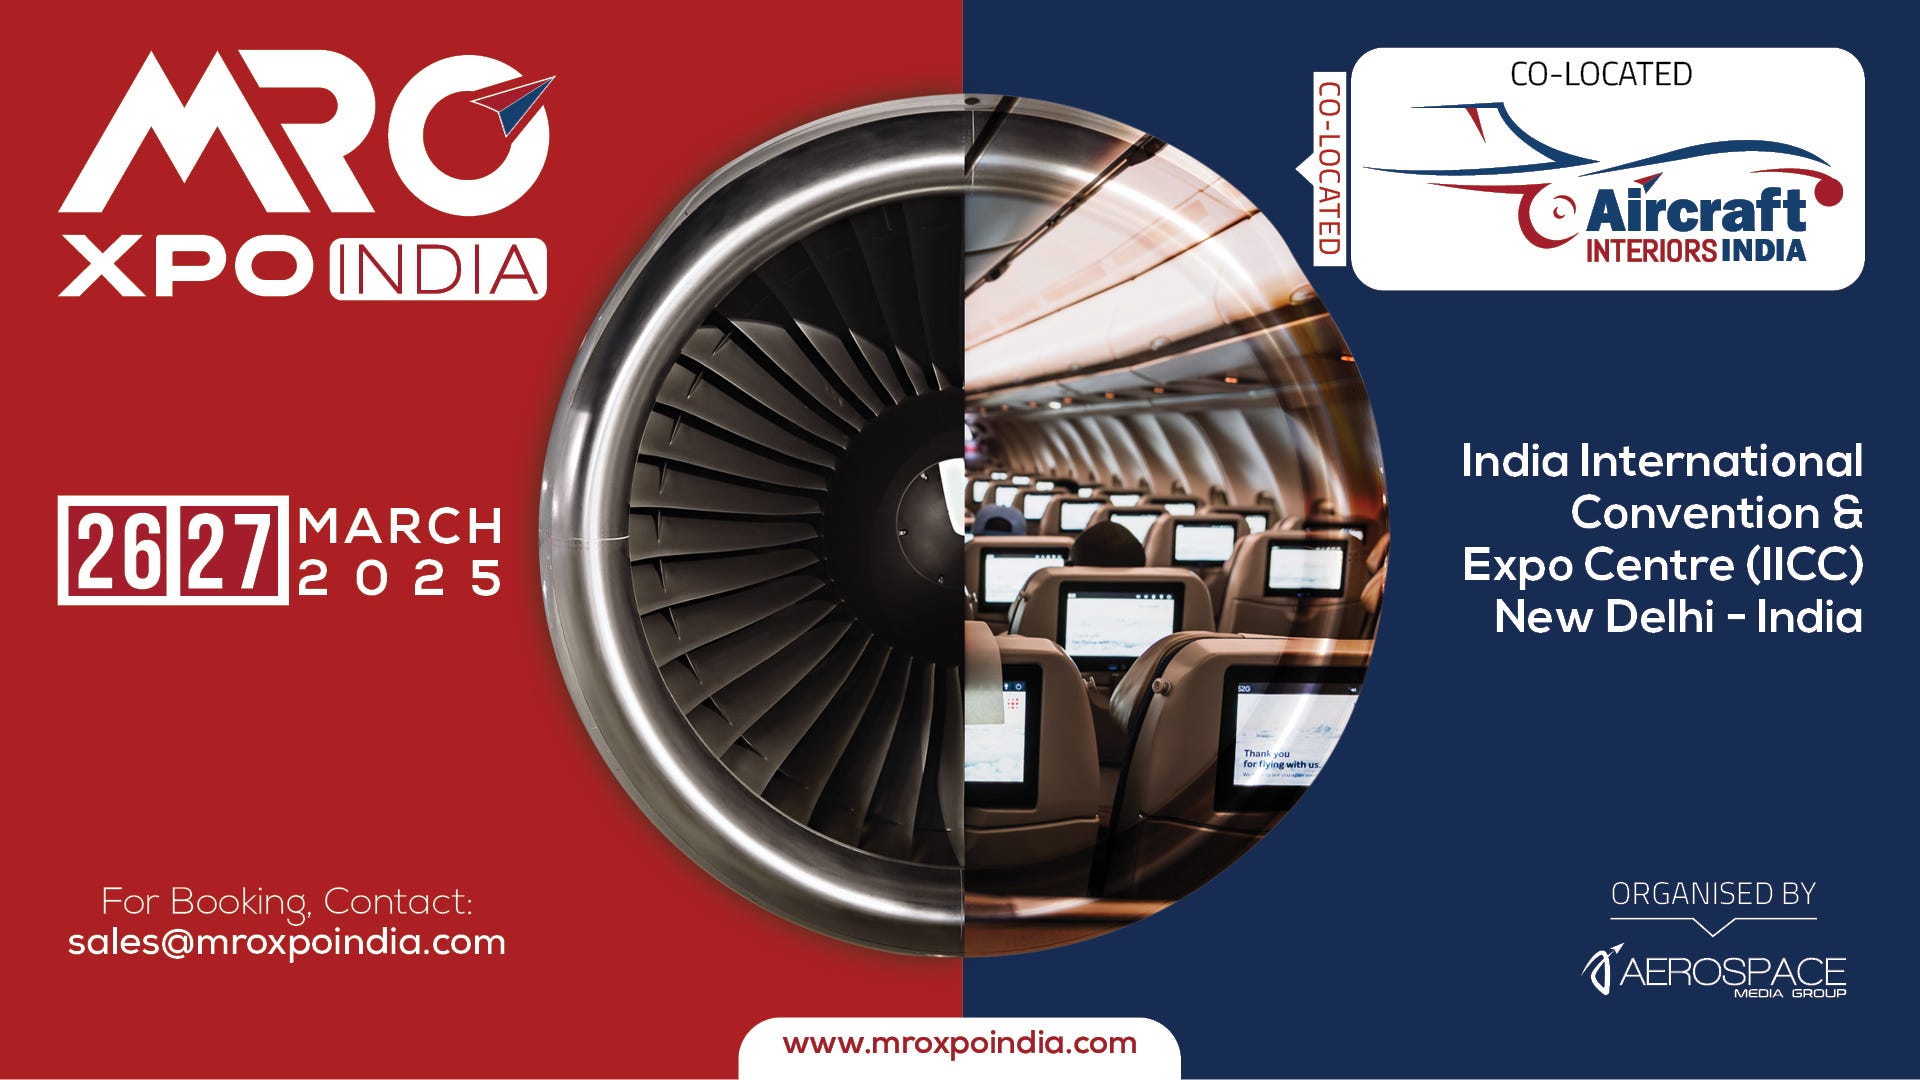 MRO XPO INDIA and Aircraft Interiors India 2025